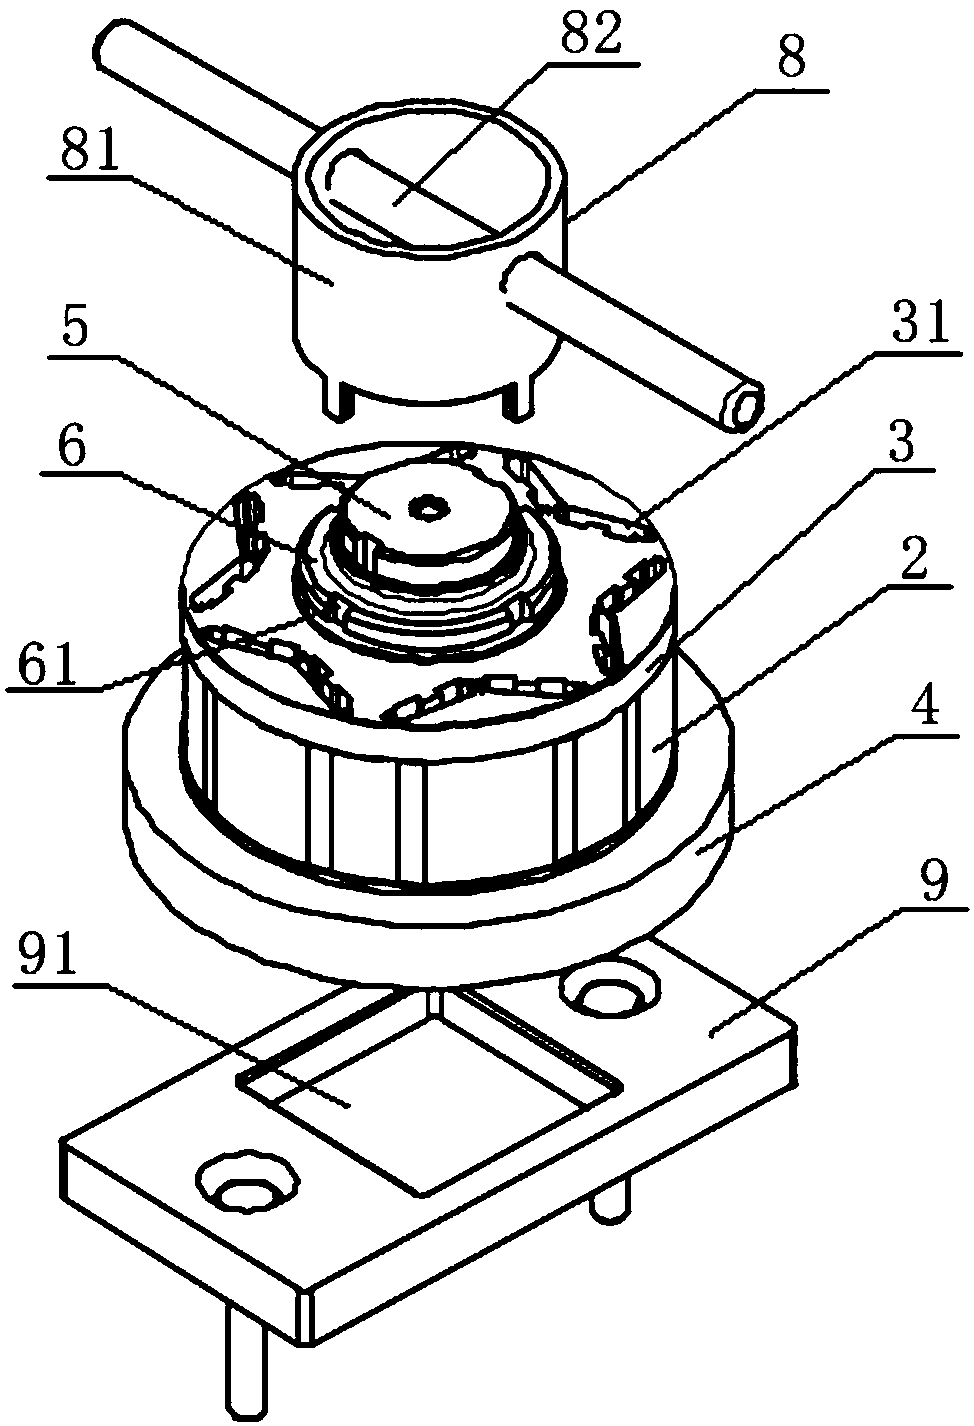 Motor rotor iron core potting lamination device and potting method